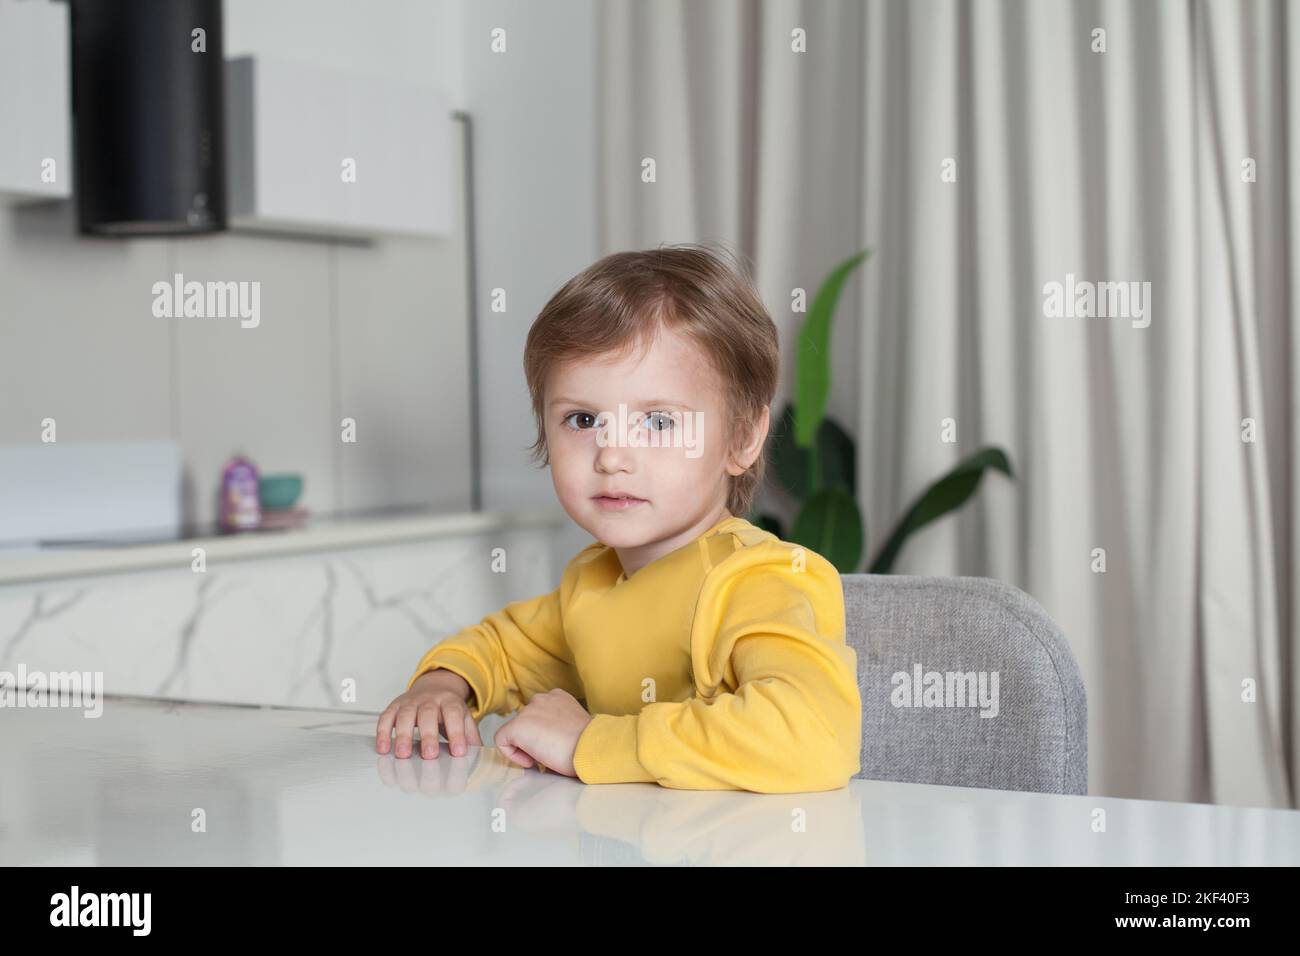 Ragazzo felice con i capelli castani in maglione giallo seduto sullo sfondo della cucina del monolocale Foto Stock